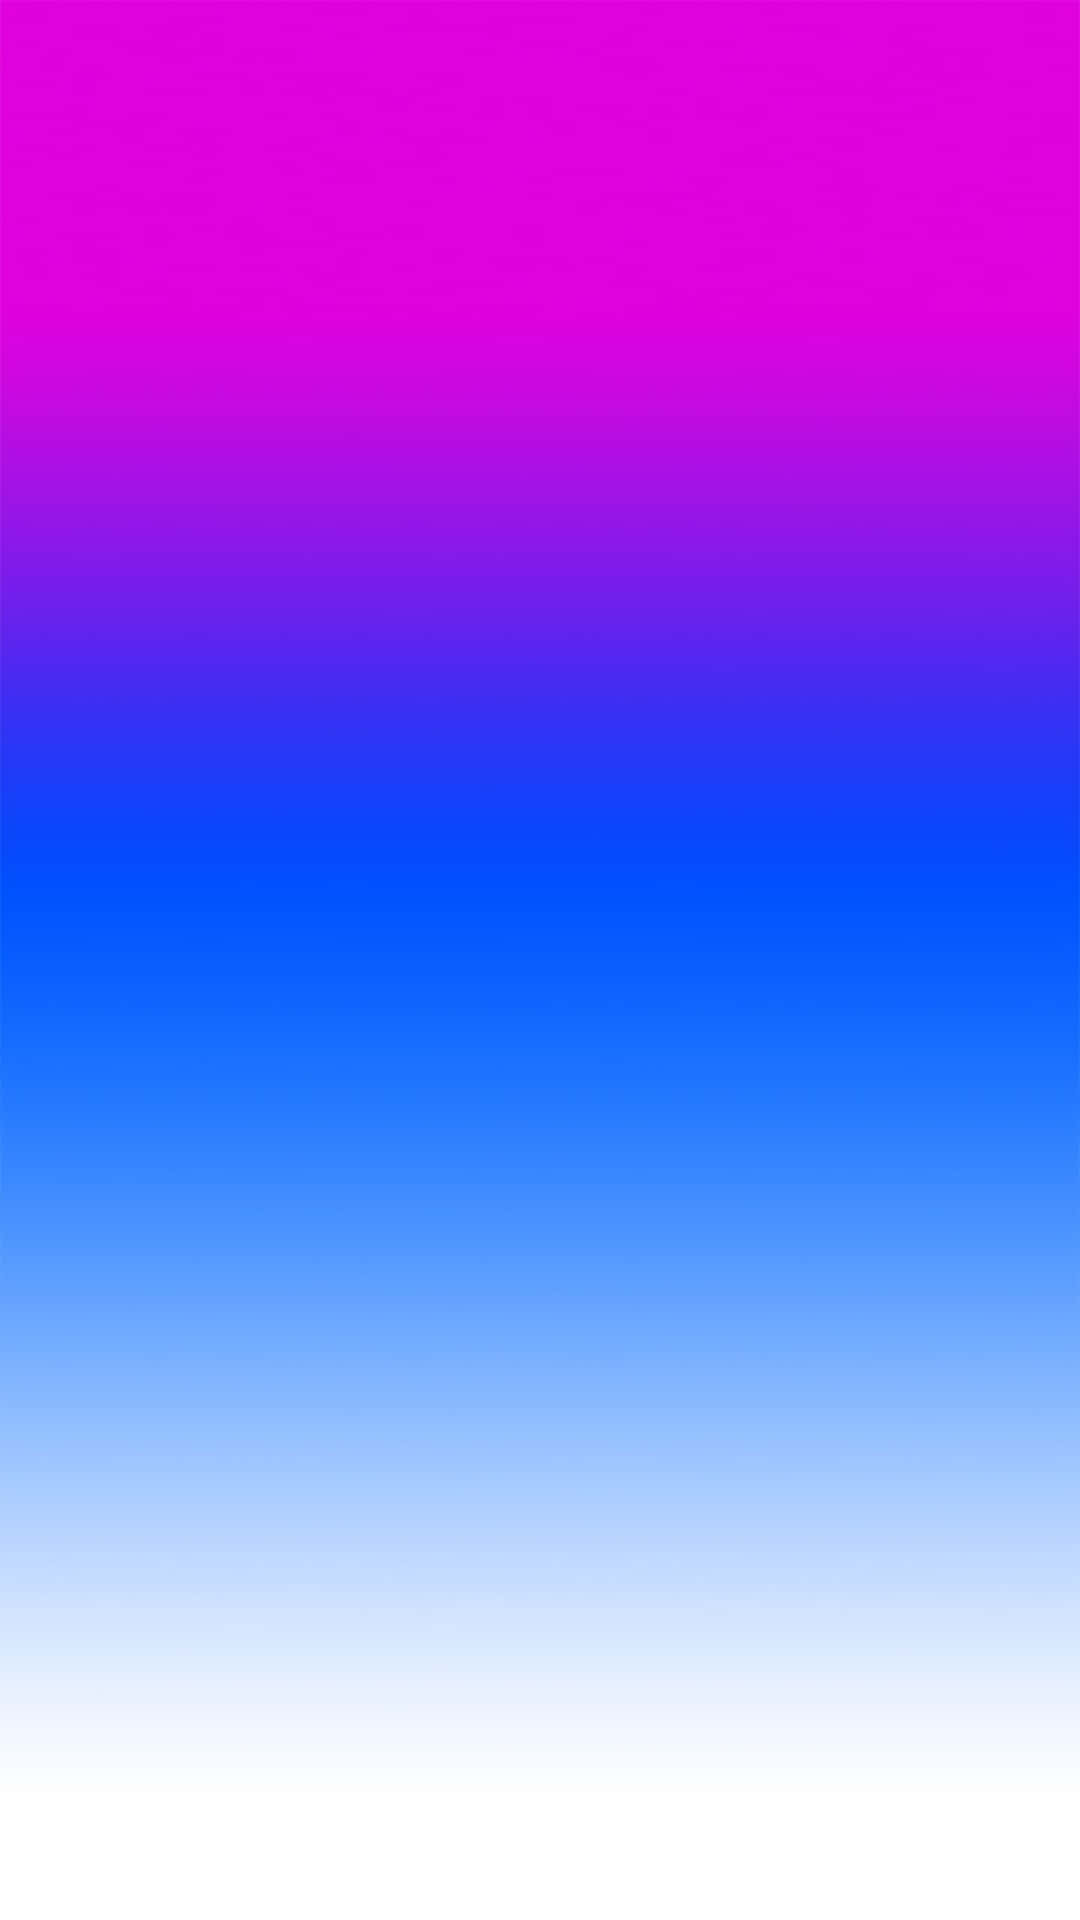 Einhintergrund Mit Einem Farbverlauf In Lila Und Blau